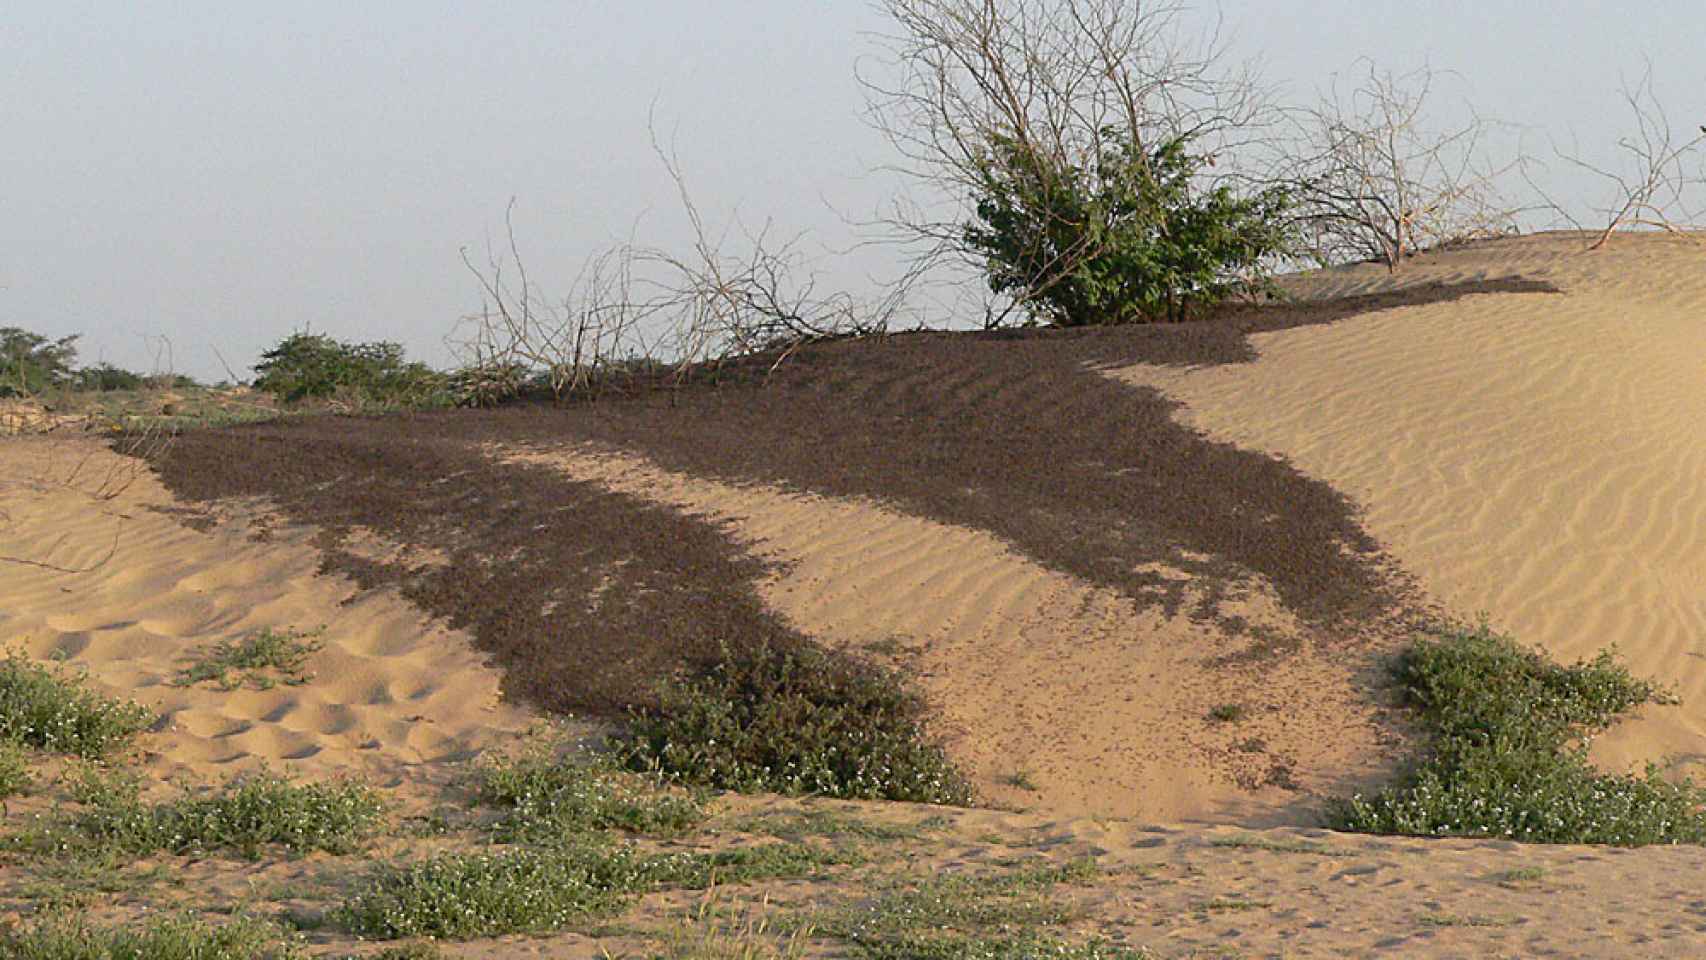 Langostas jóvenes en bandas compactas antes de desarrollar alas, en Sudán